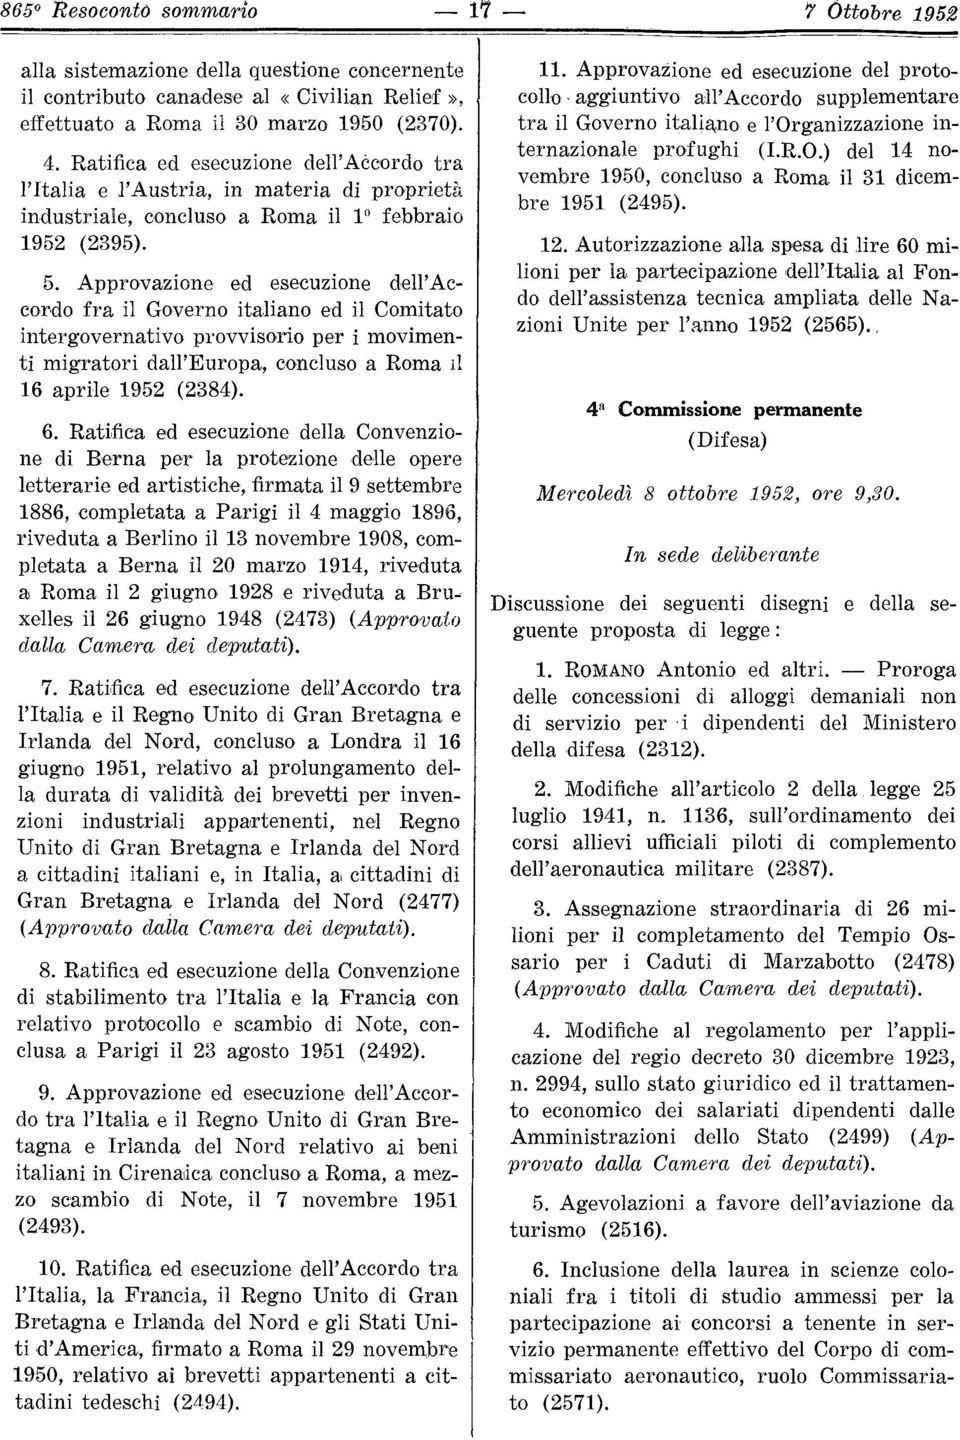 Approvazione ed esecuzione dell'accordo fra il Governo italiano ed il Comitato intergovernativo provvisorio per i movimenti migratori dall'europa, concluso a Roma il 16 aprile 1952 (2384). 6.